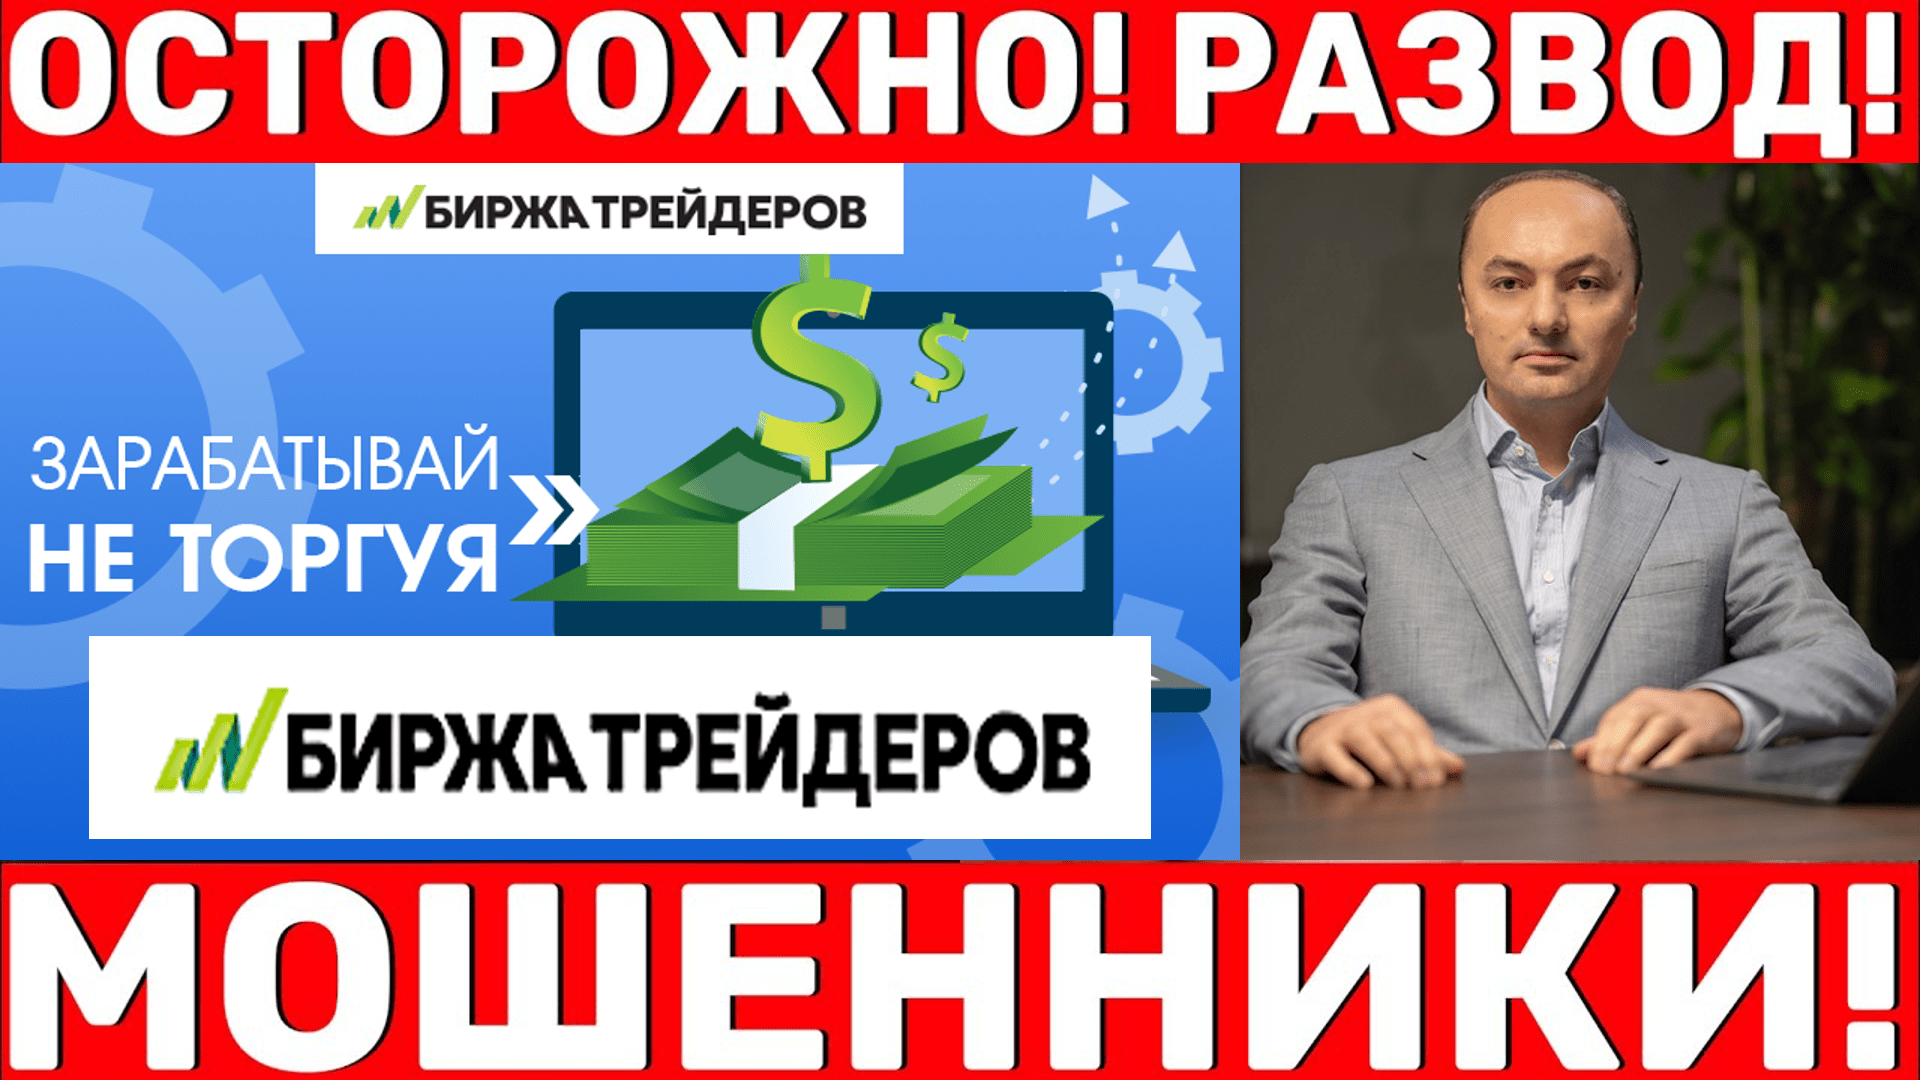 Ваган Симонян и афера «Биржа трейдеров»: раскрыта мошенническая схема